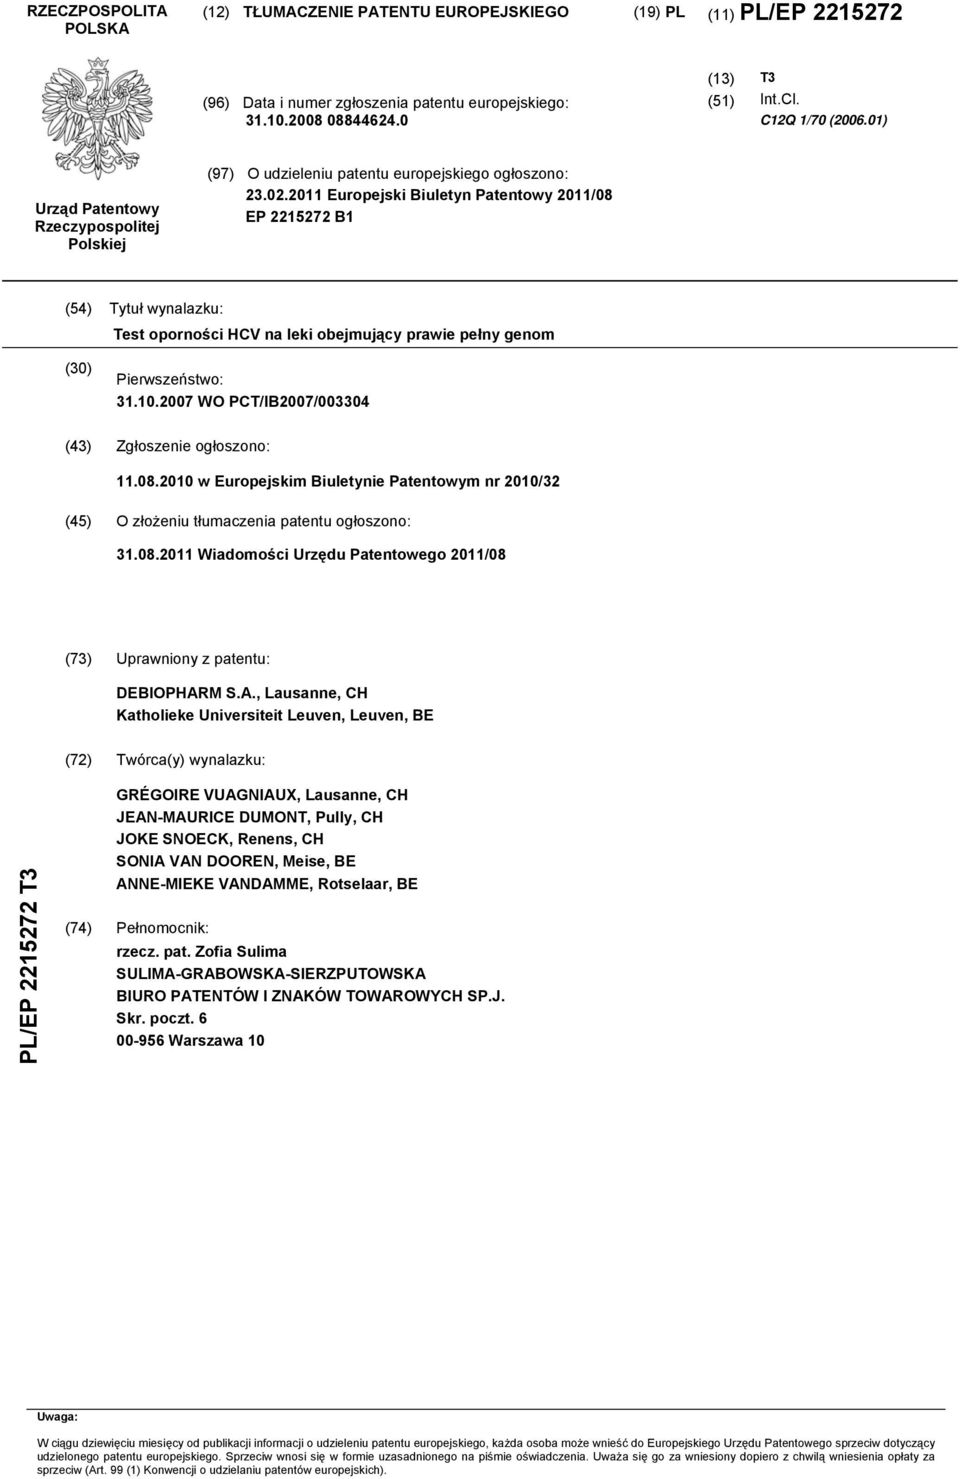 2011 Europejski Biuletyn Patentowy 2011/08 EP 221272 B1 (4) Tytuł wynalazku: Test oporności HCV na leki obejmujący prawie pełny genom (30) Pierwszeństwo: 31.10.